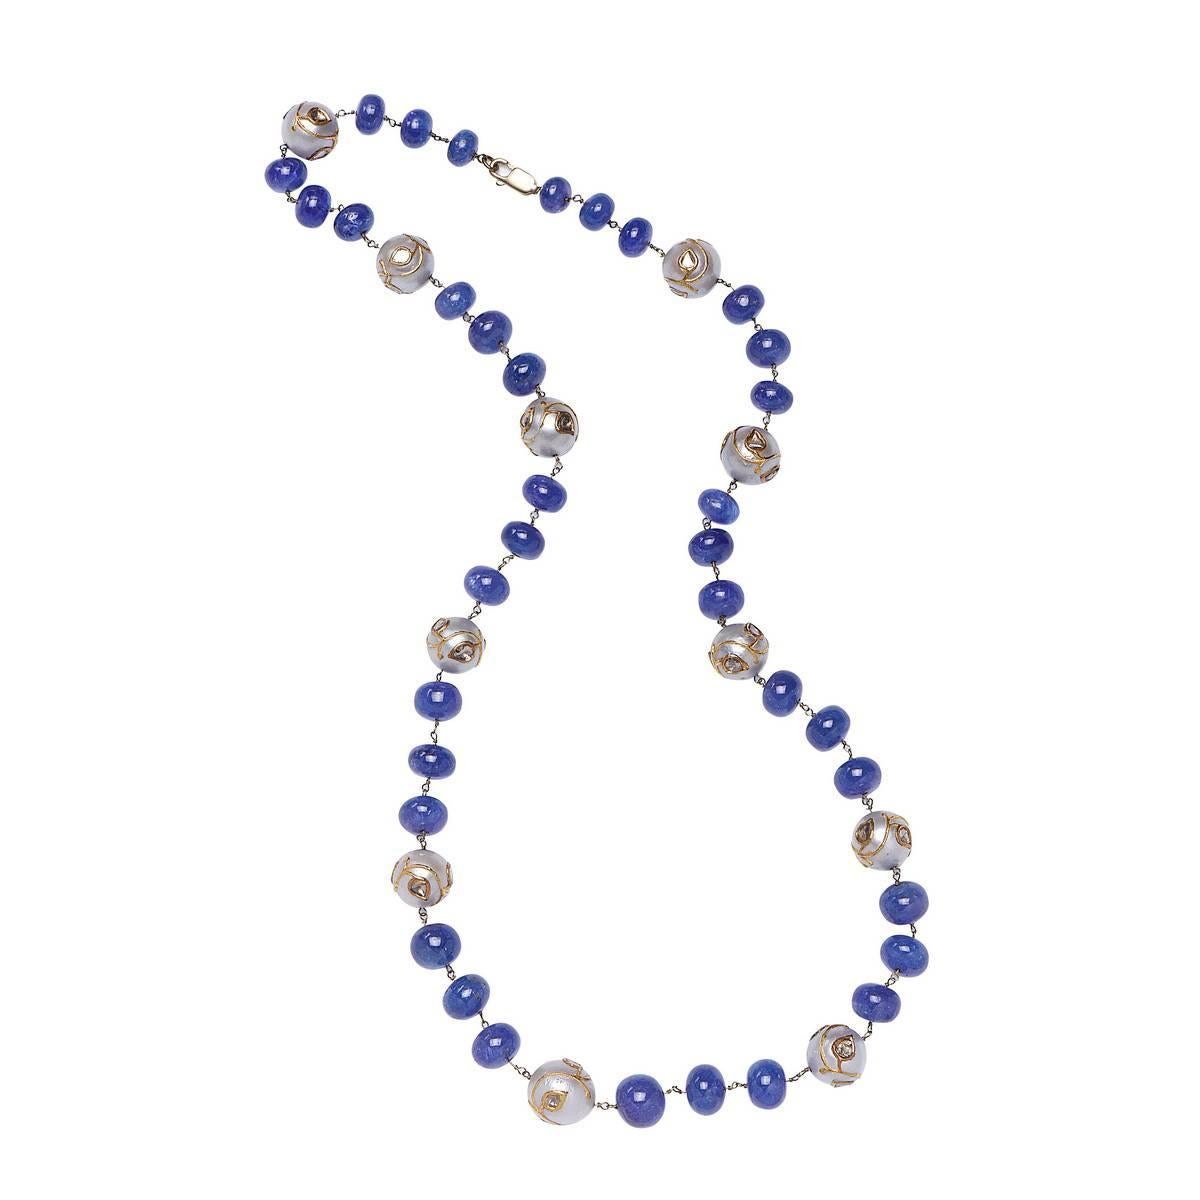 Ce magnifique collier de tanzanites et de perles avec des diamants sur des perles enfilées sur un fil d'or, d'une longueur de 22 pouces, est un régal pour les amateurs de tanzanites.

14k:7.44gms
D:2.2cts                                          